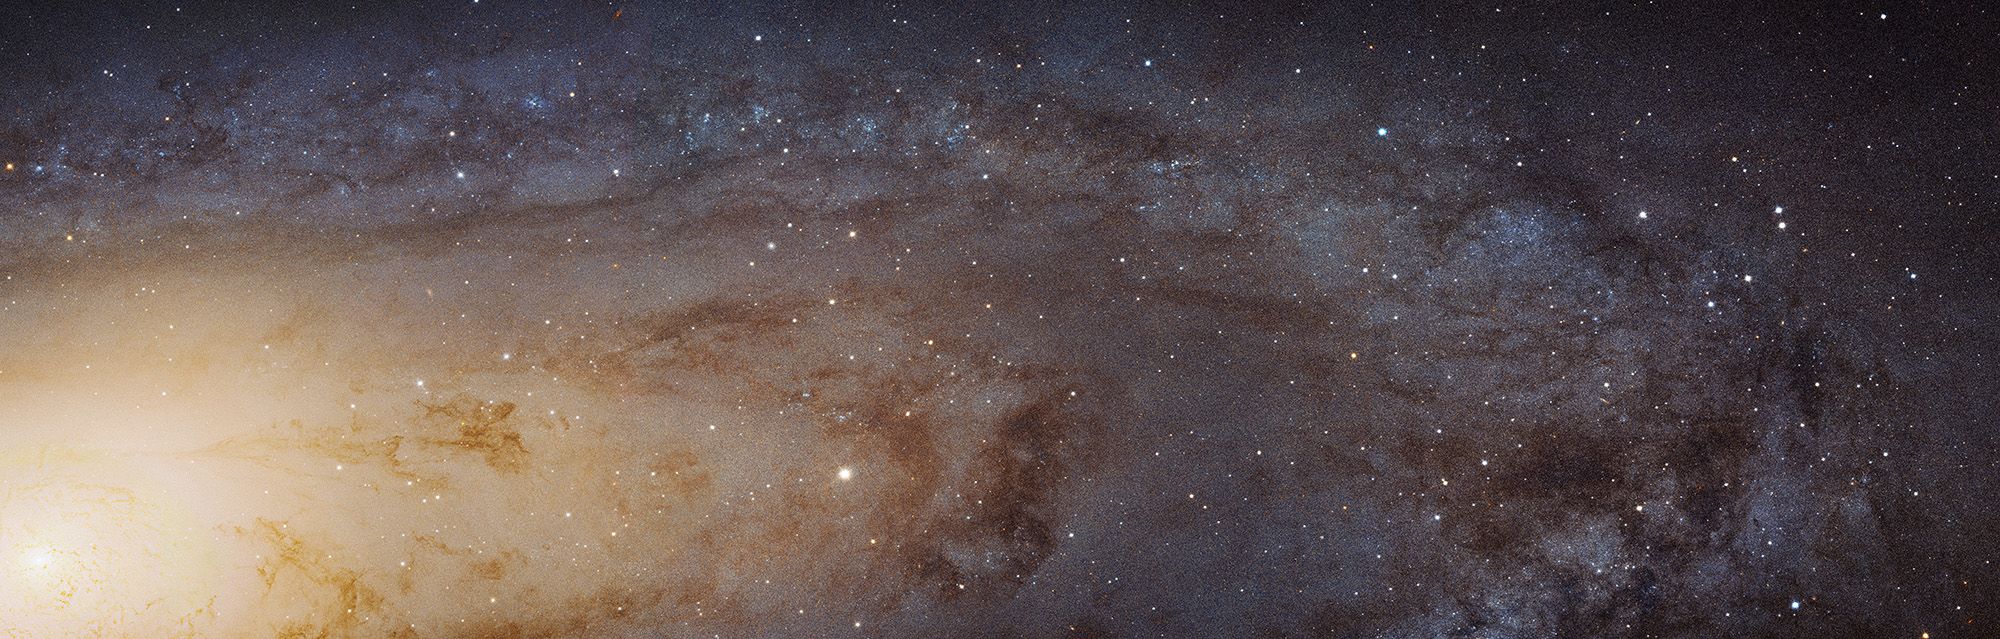 Манай сүүн замтай хамгийн ойр орших Andromeda галактик.